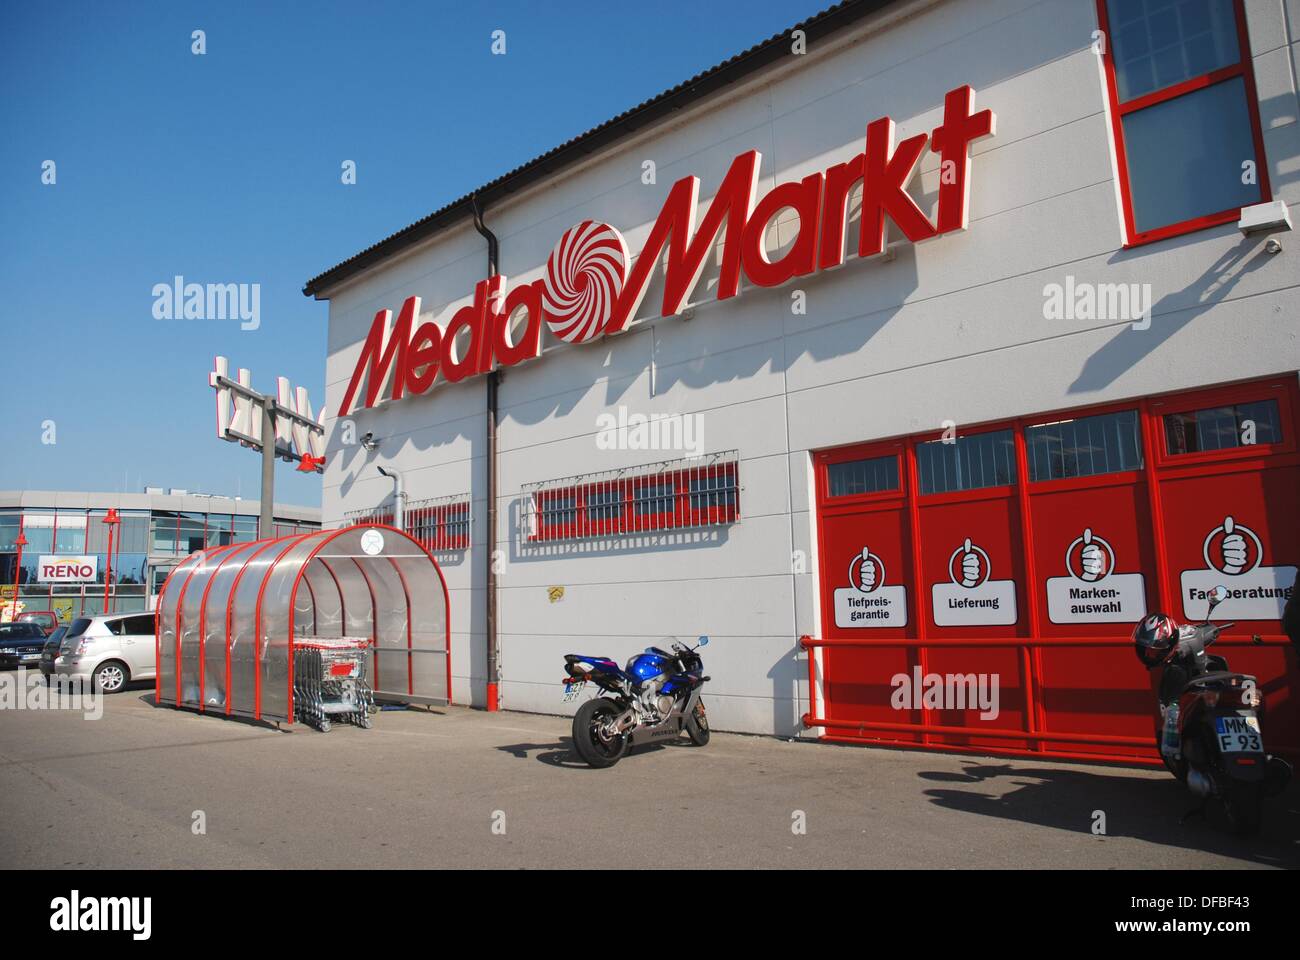 Tienda de Media Markt en Alemania Fotografía de stock - Alamy